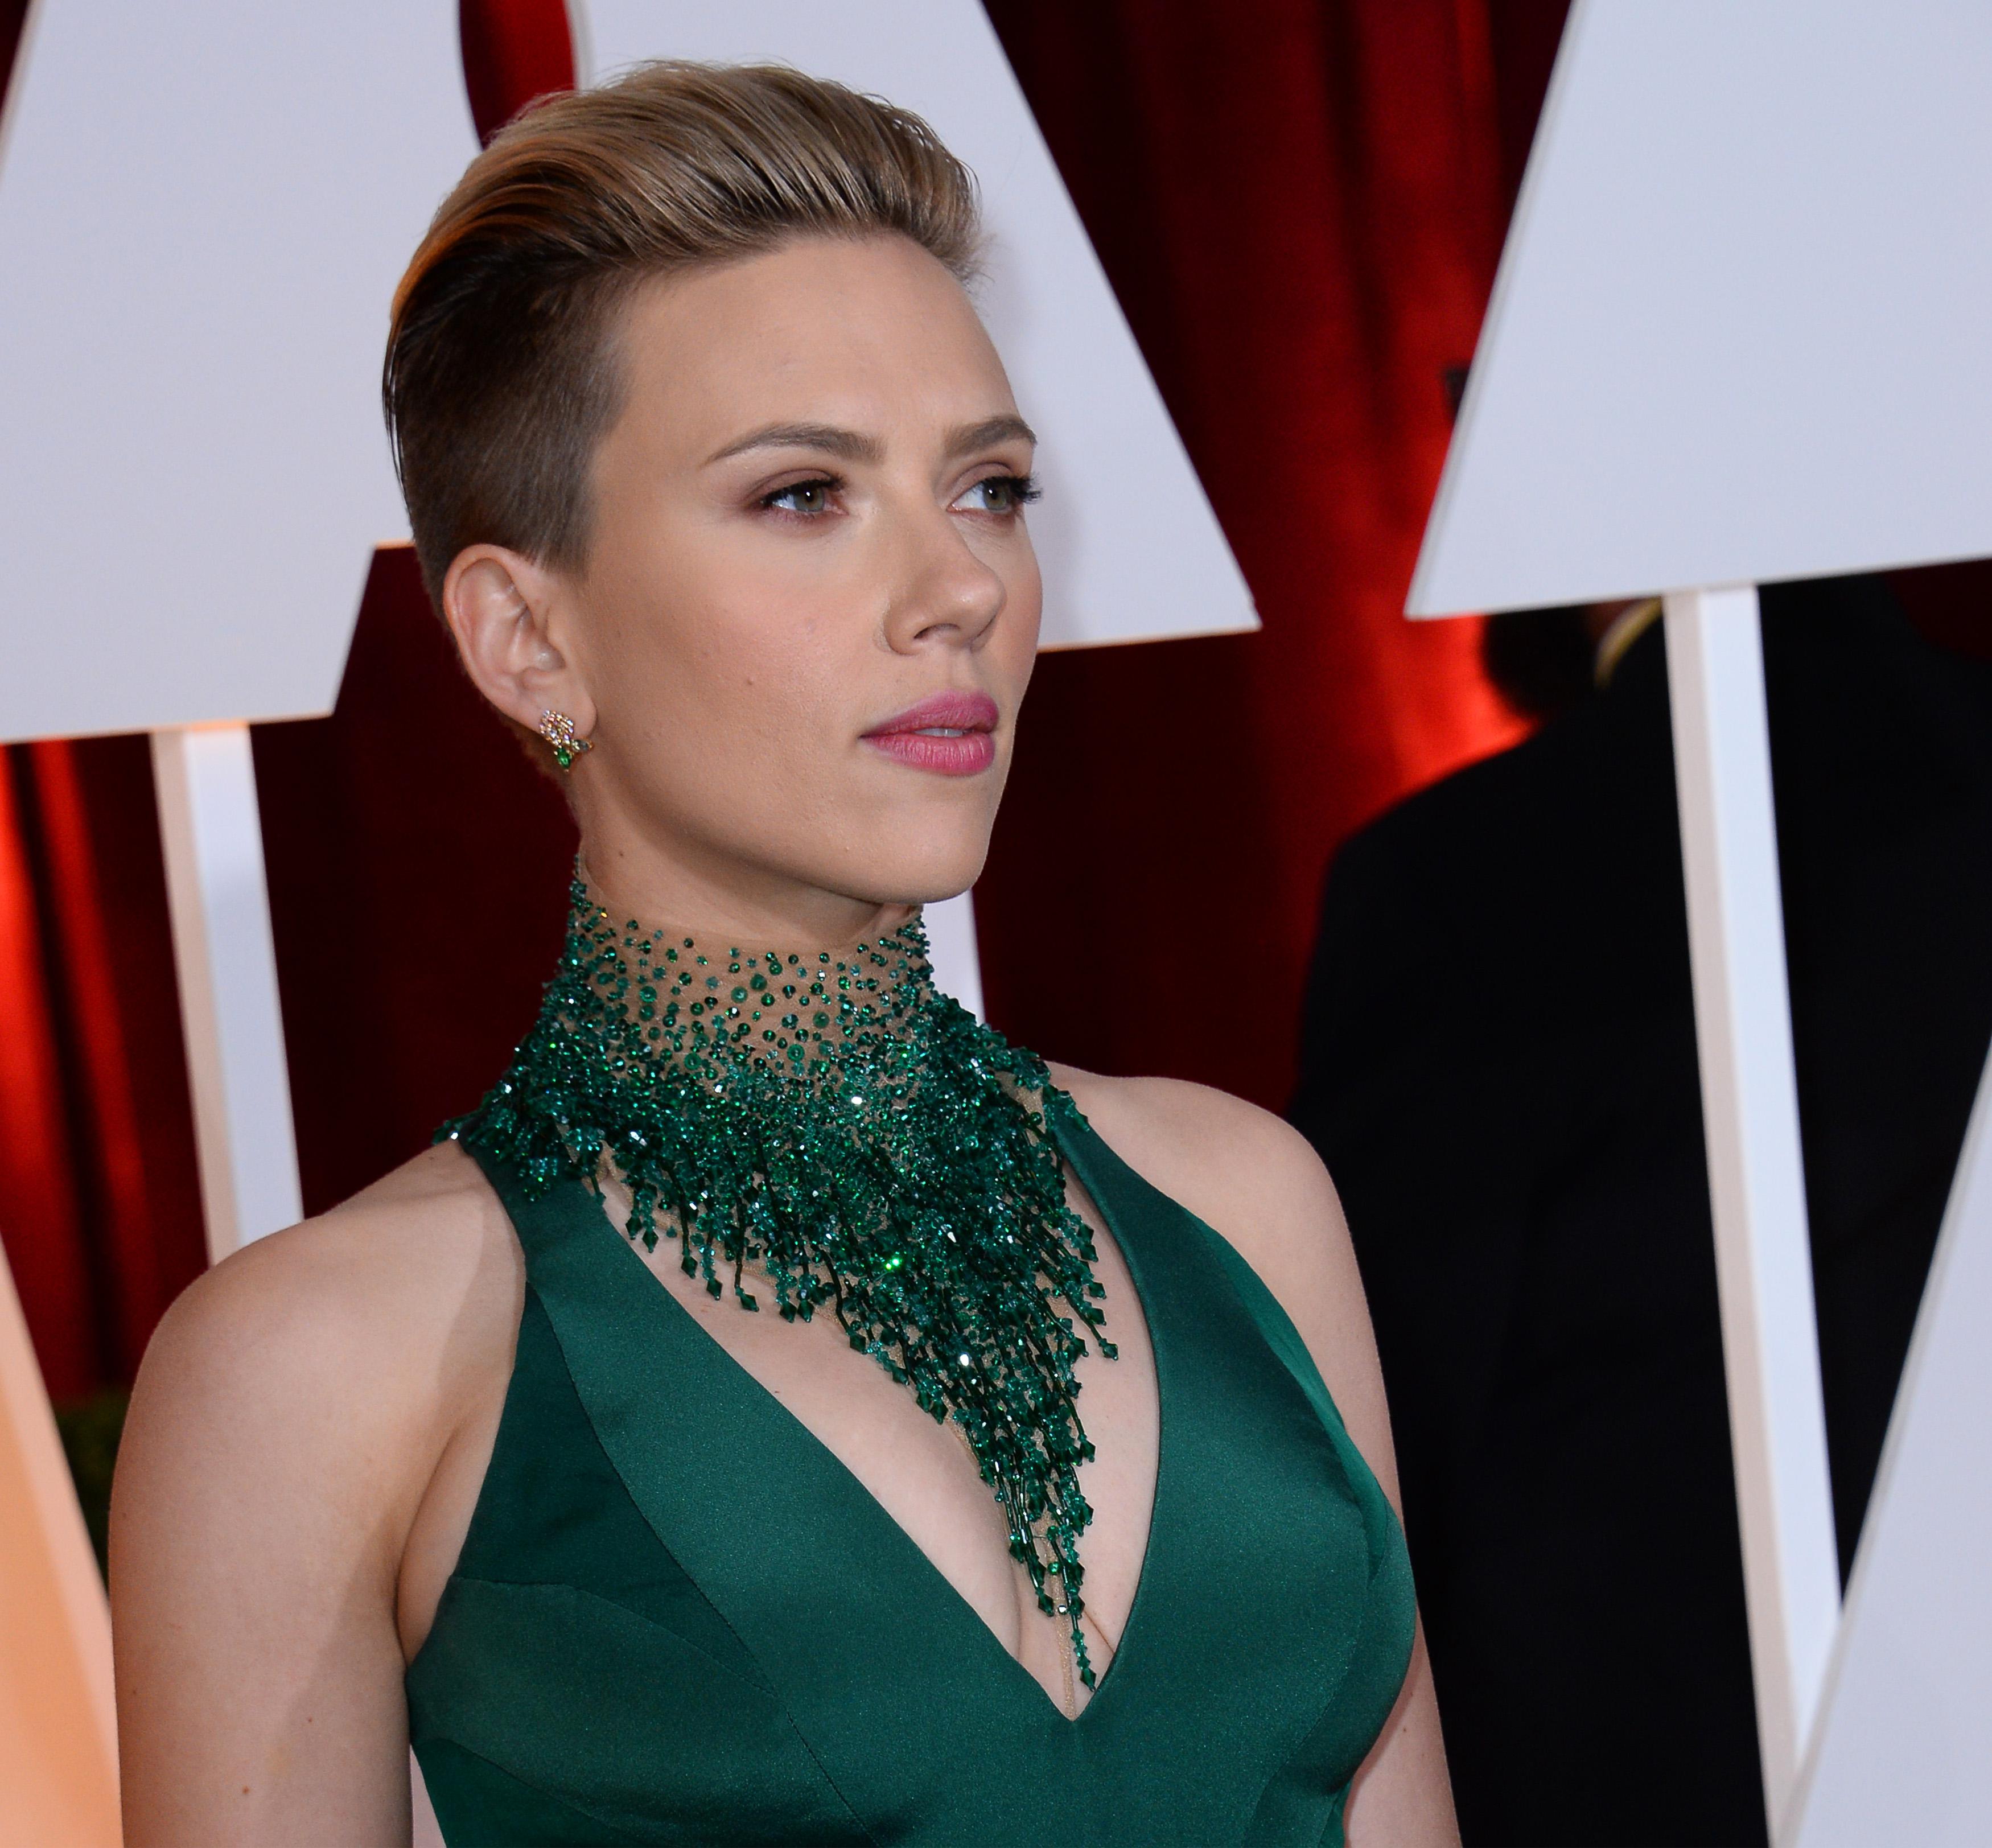 Scarlett Johansson con un rosa chiaro 'colore dell'innocenza' per antonomasia, potrebbe invece lanciare al partner l'impressione di essere confuse, indecise.